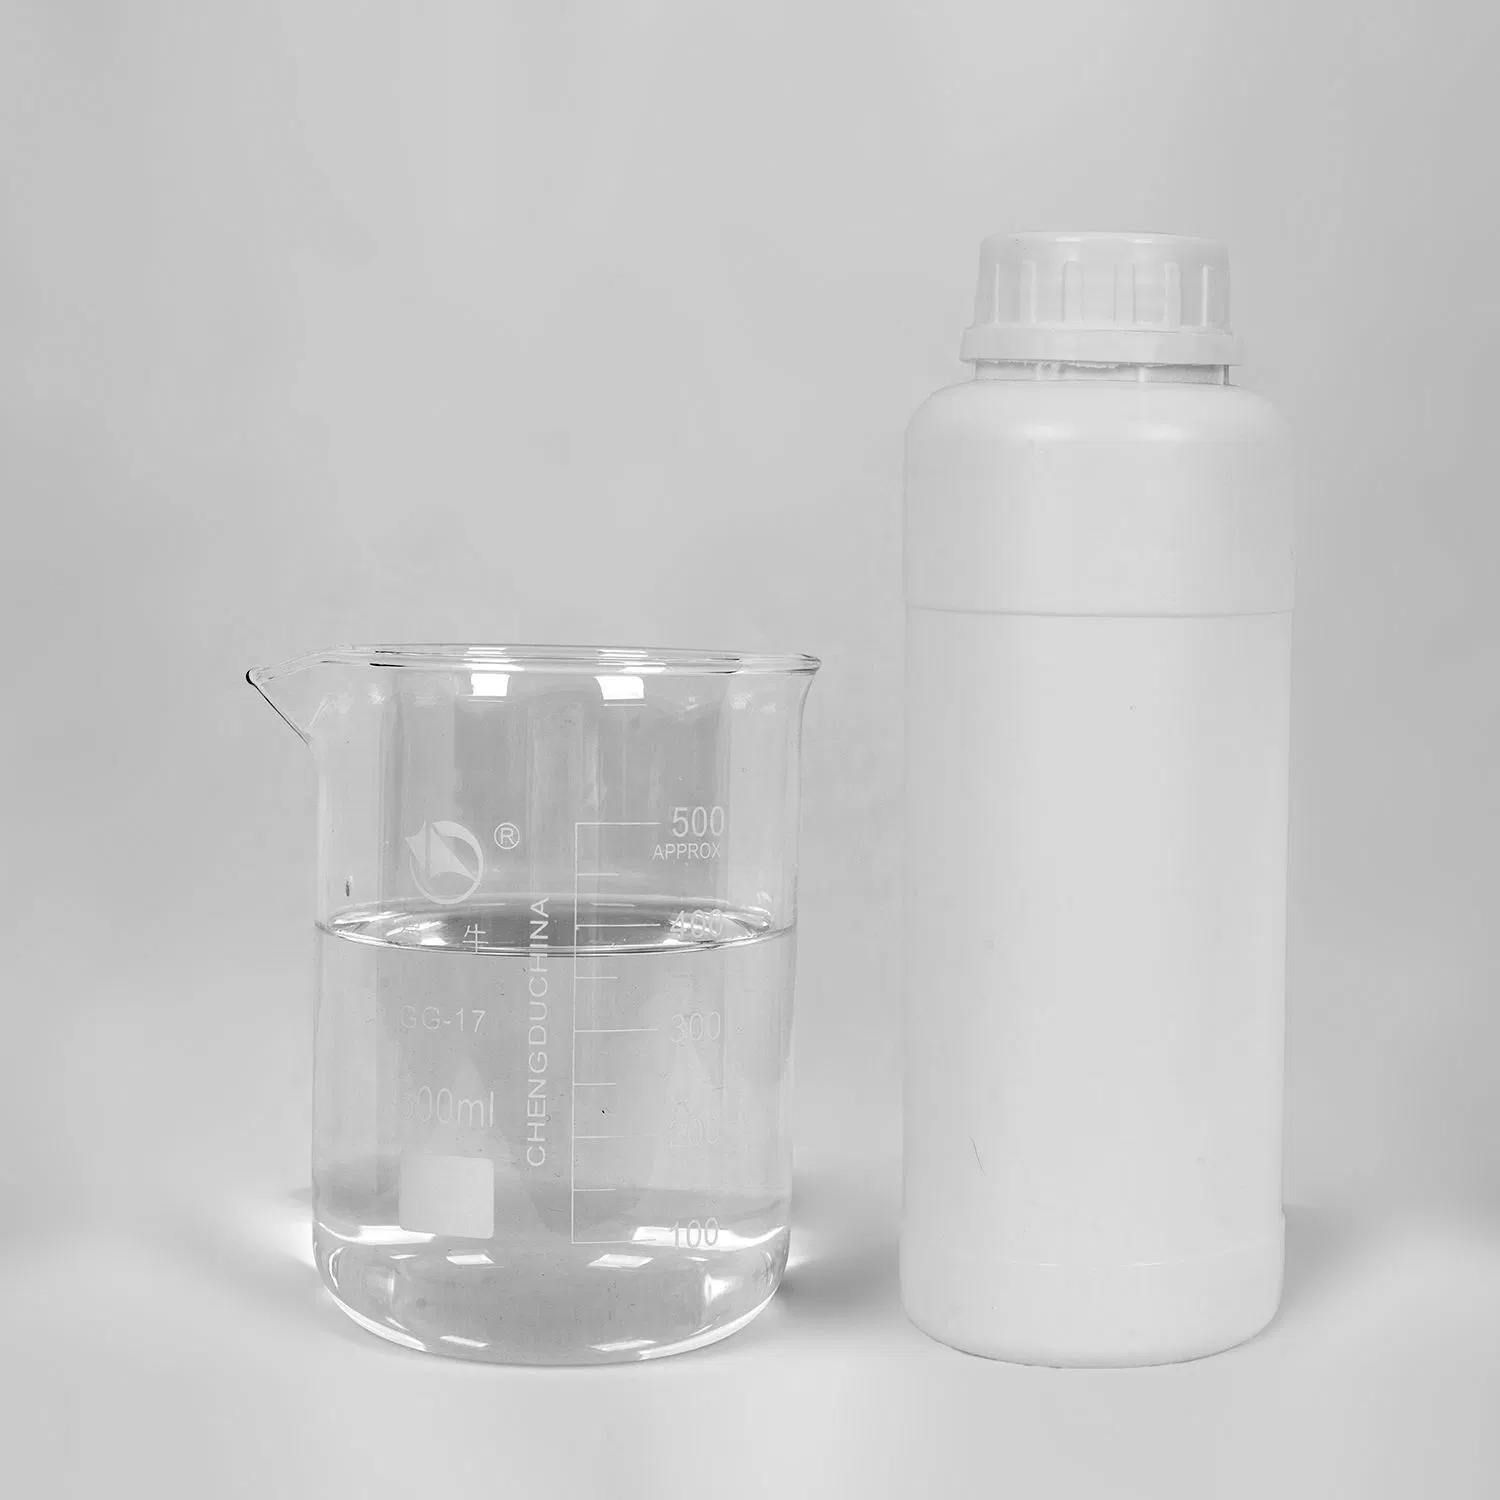 Высококачественные пластификаторы с использованием эпоксидной кислоты и метилового эфира, содержащие ПВХ Для ПВХ